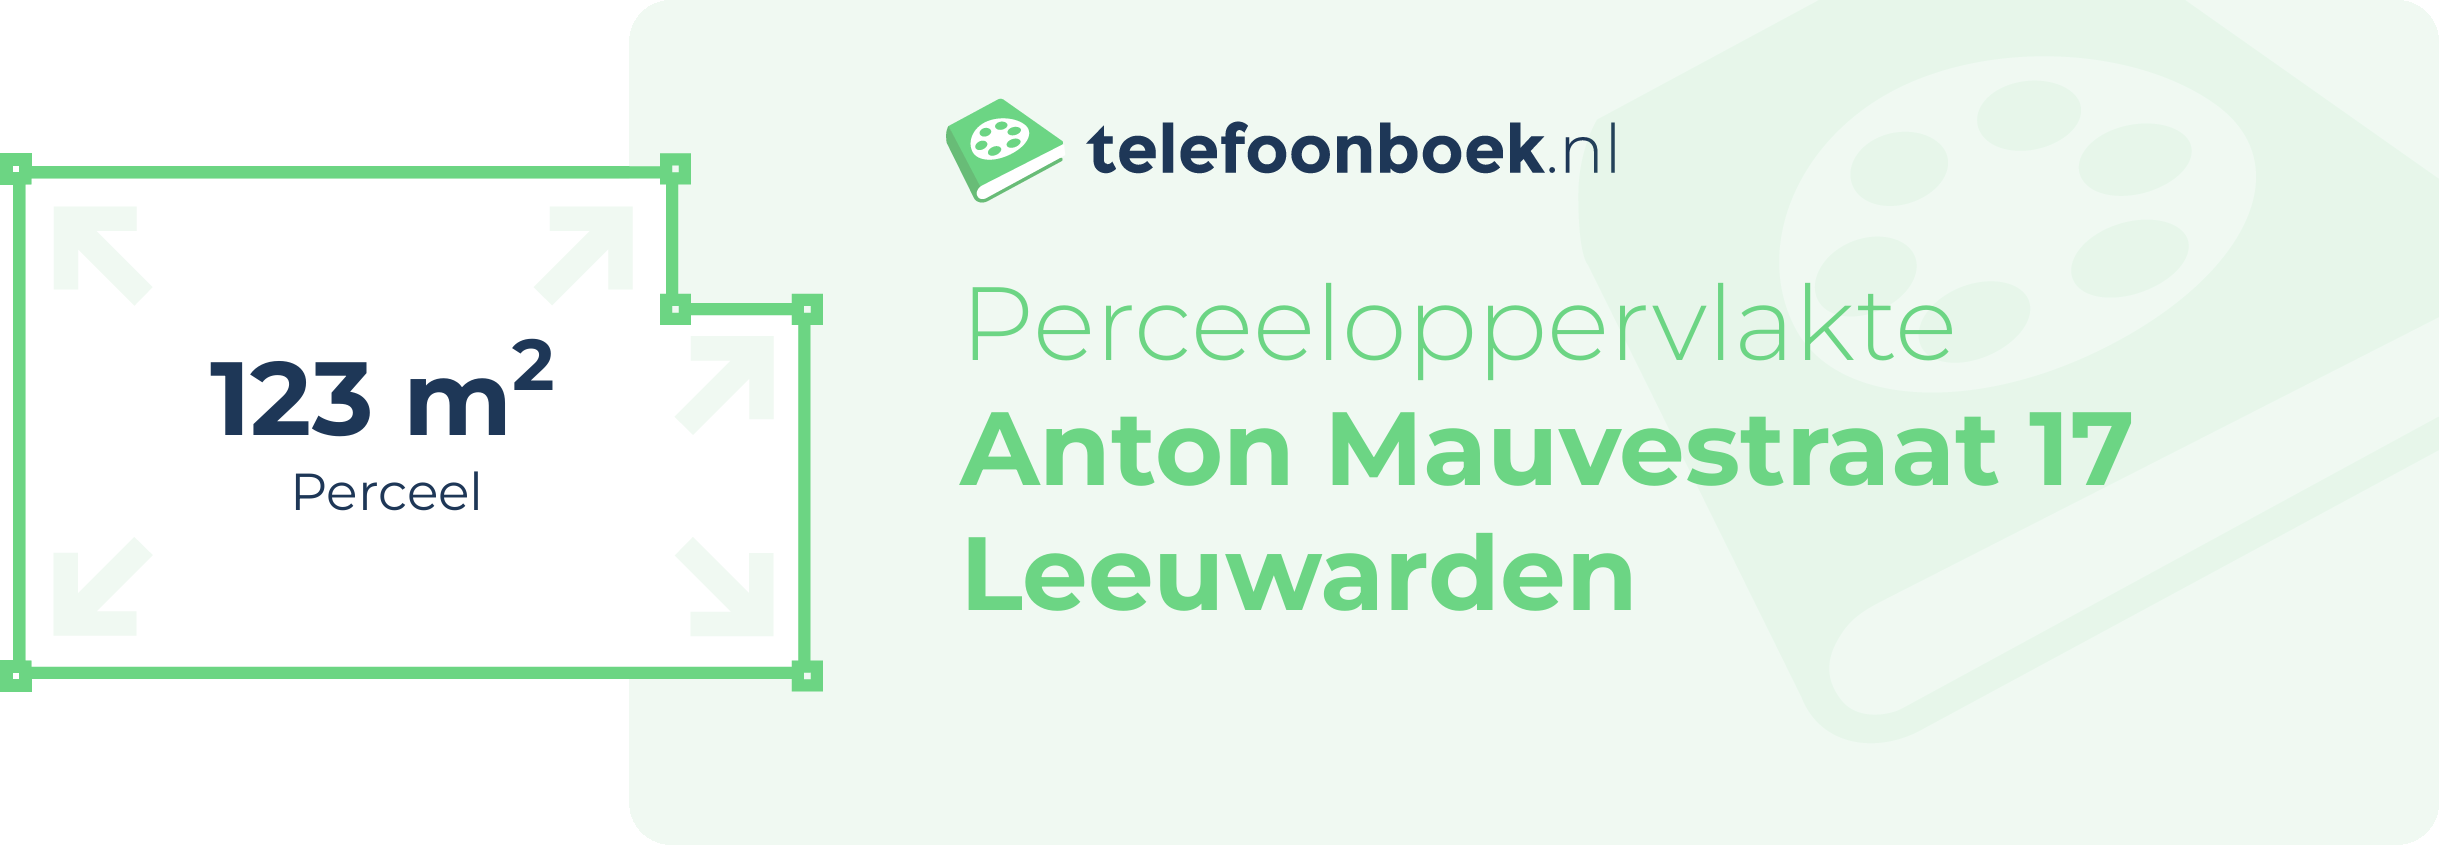 Perceeloppervlakte Anton Mauvestraat 17 Leeuwarden